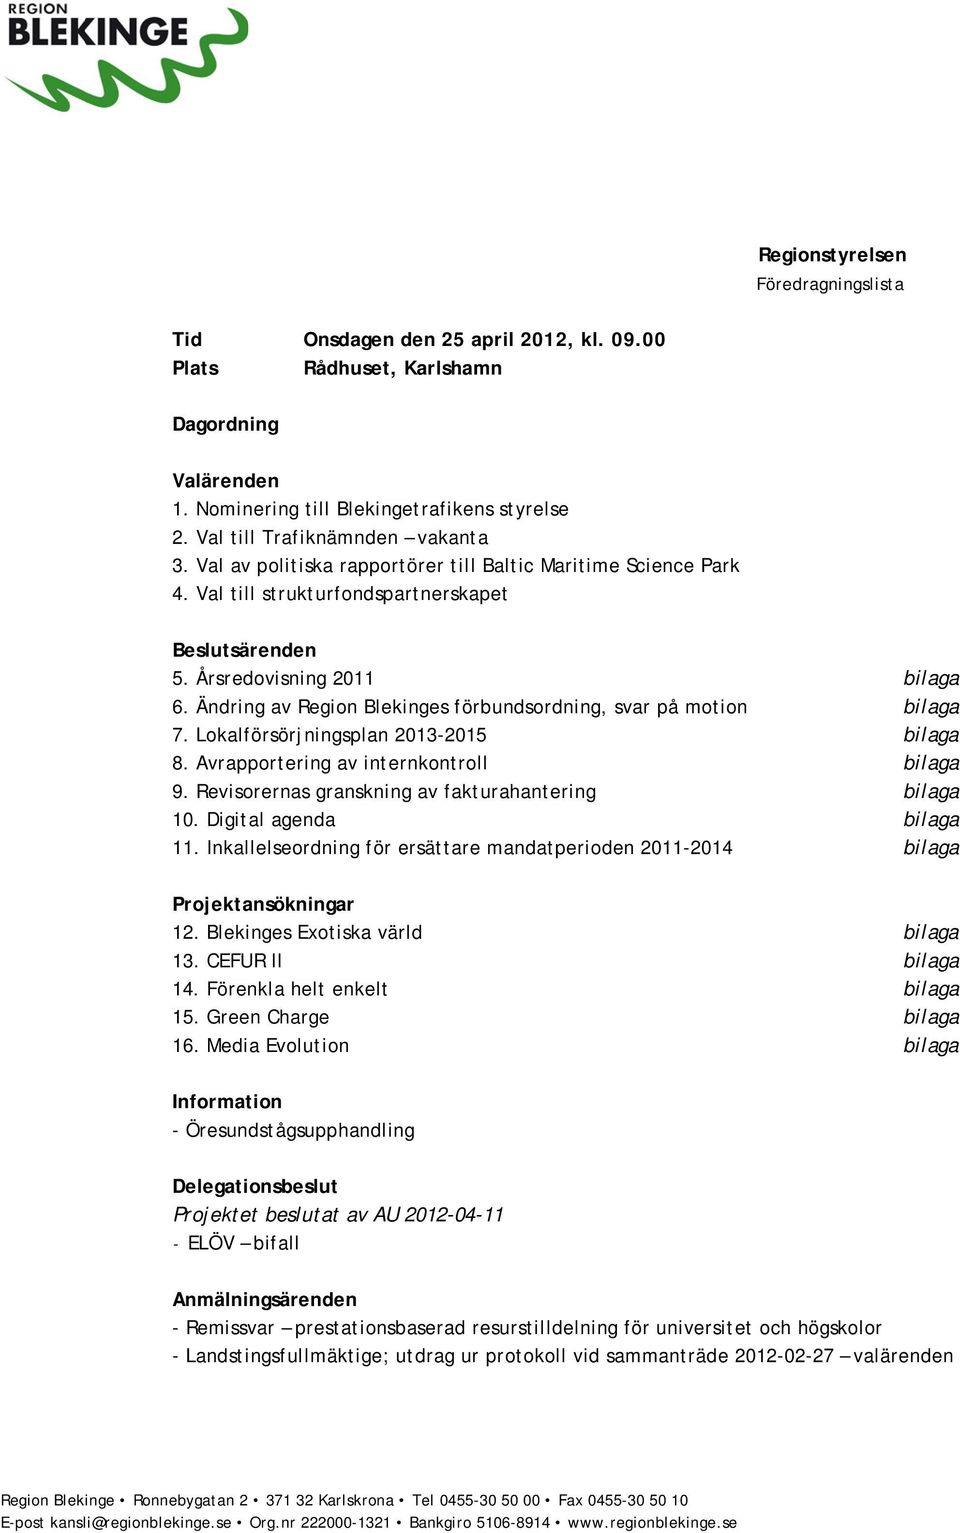 Ändring av Region Blekinges förbundsordning, svar på motion bilaga 7. Lokalförsörjningsplan 2013-2015 bilaga 8. Avrapportering av internkontroll bilaga 9.